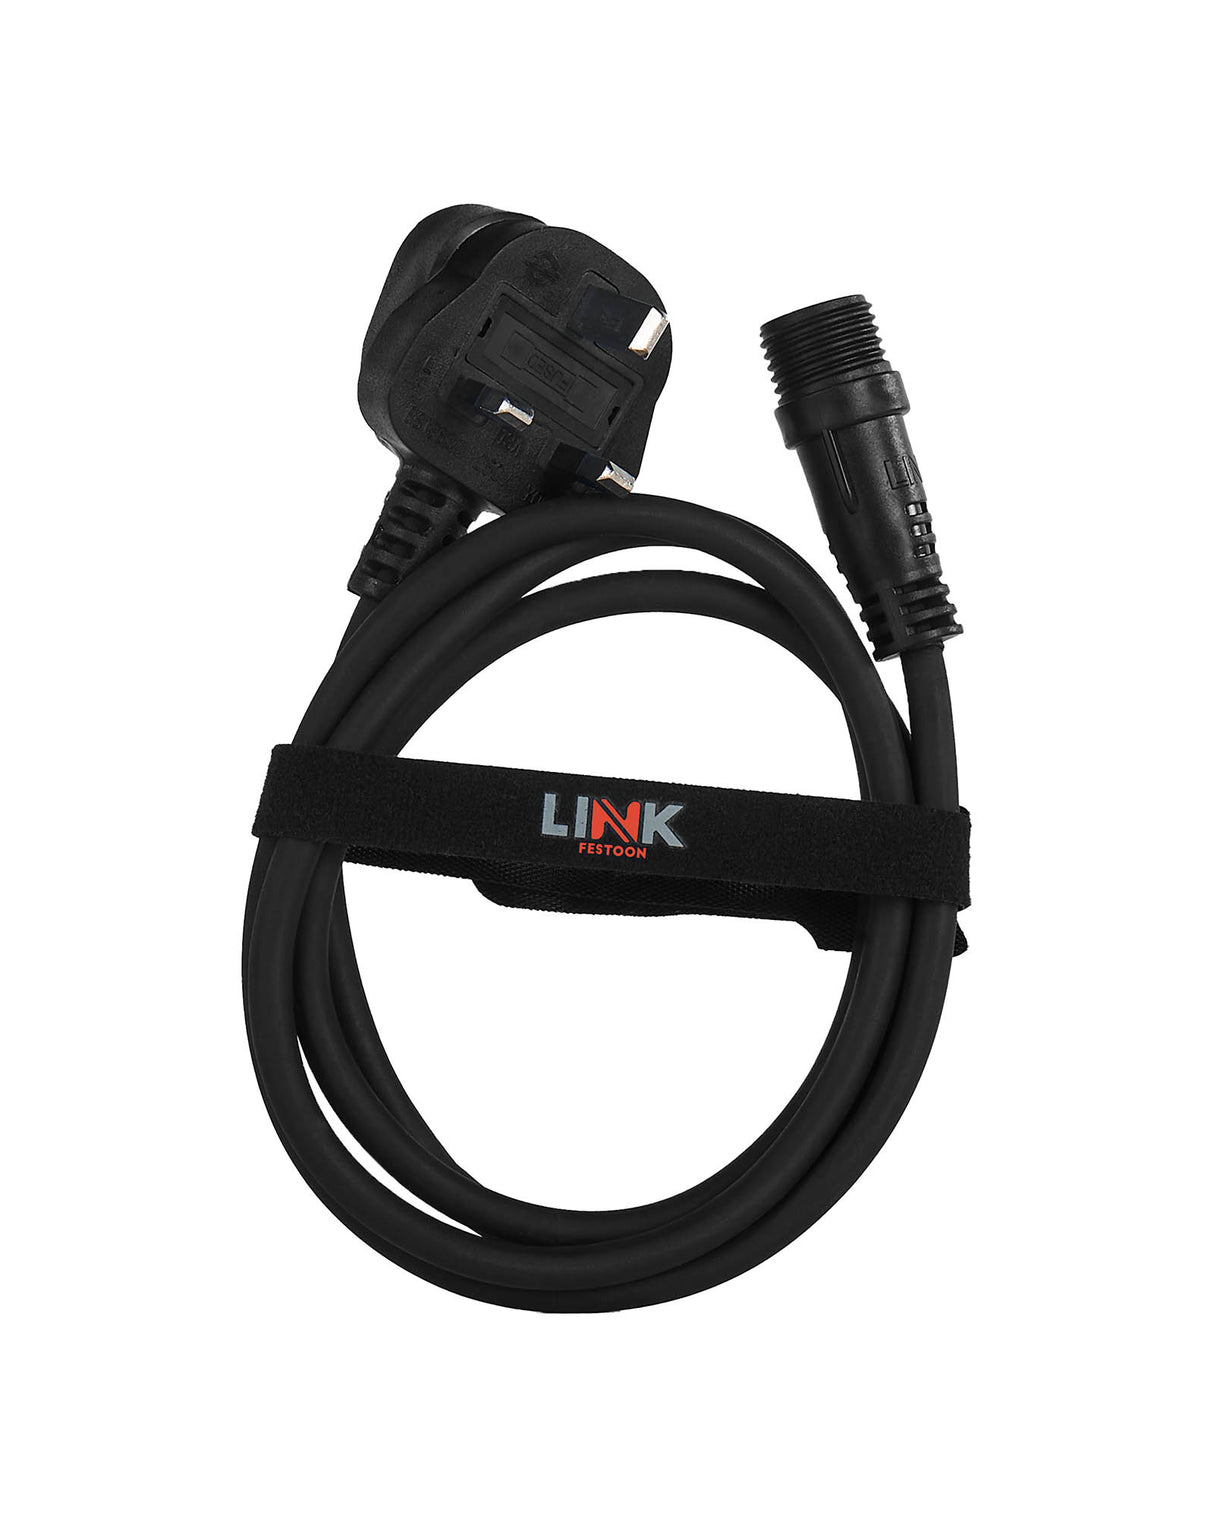 LINK FESTOON 2m Black Starter Cable